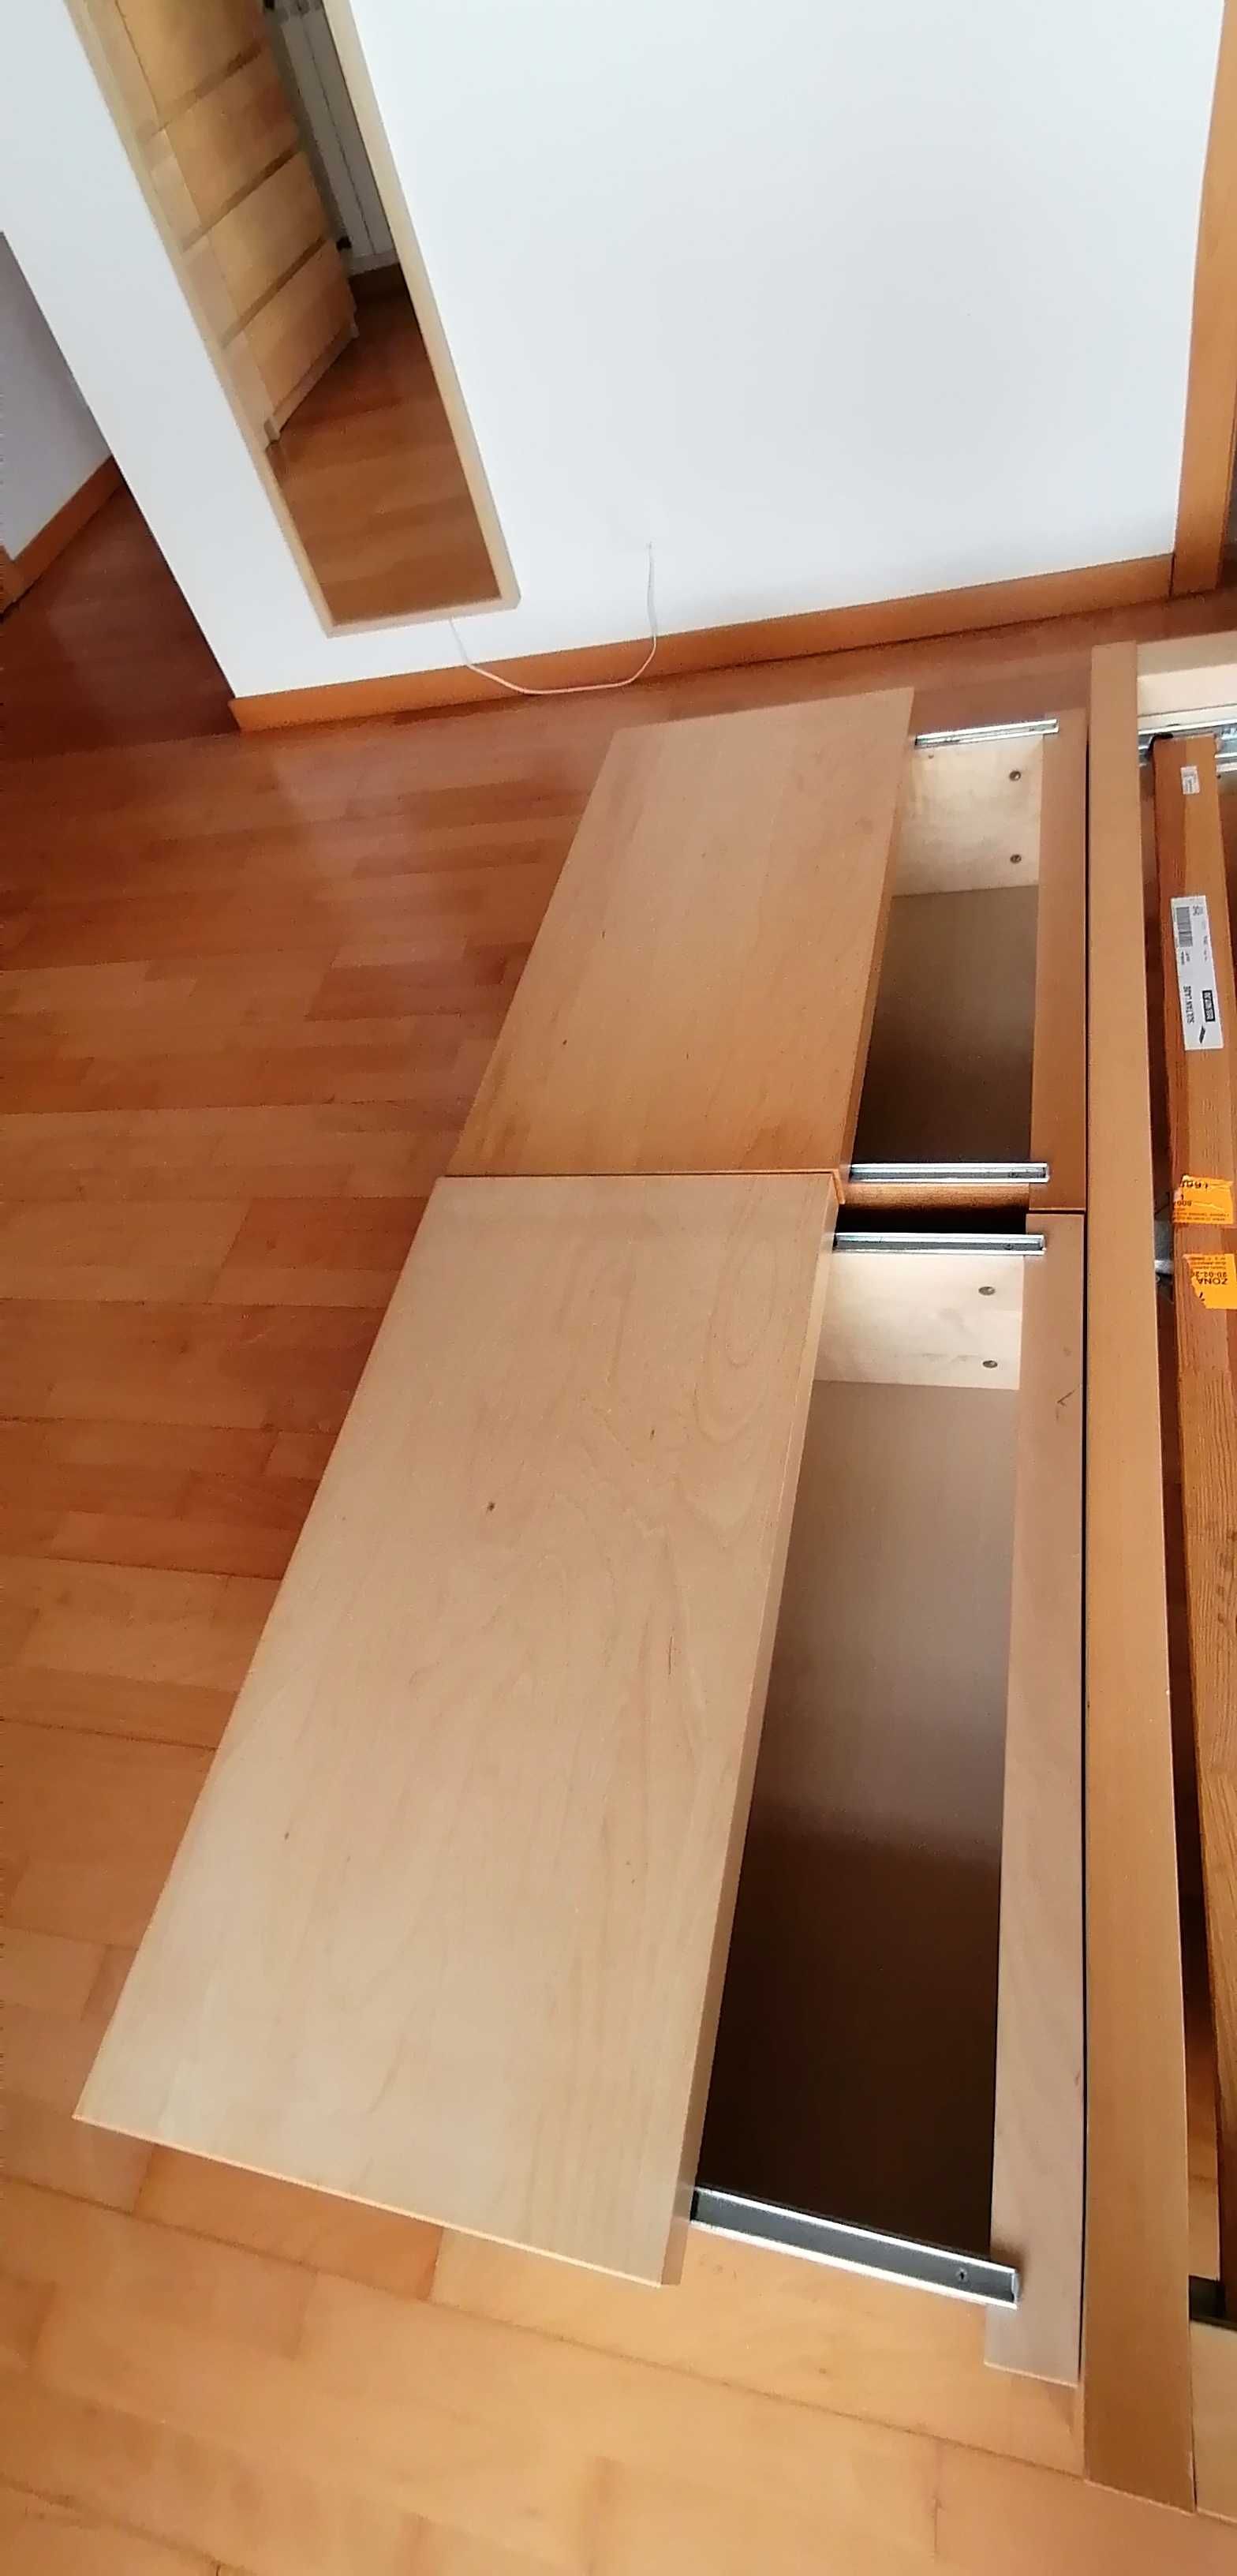 Cama e mesas de cabeceira Ikea Malm bétula